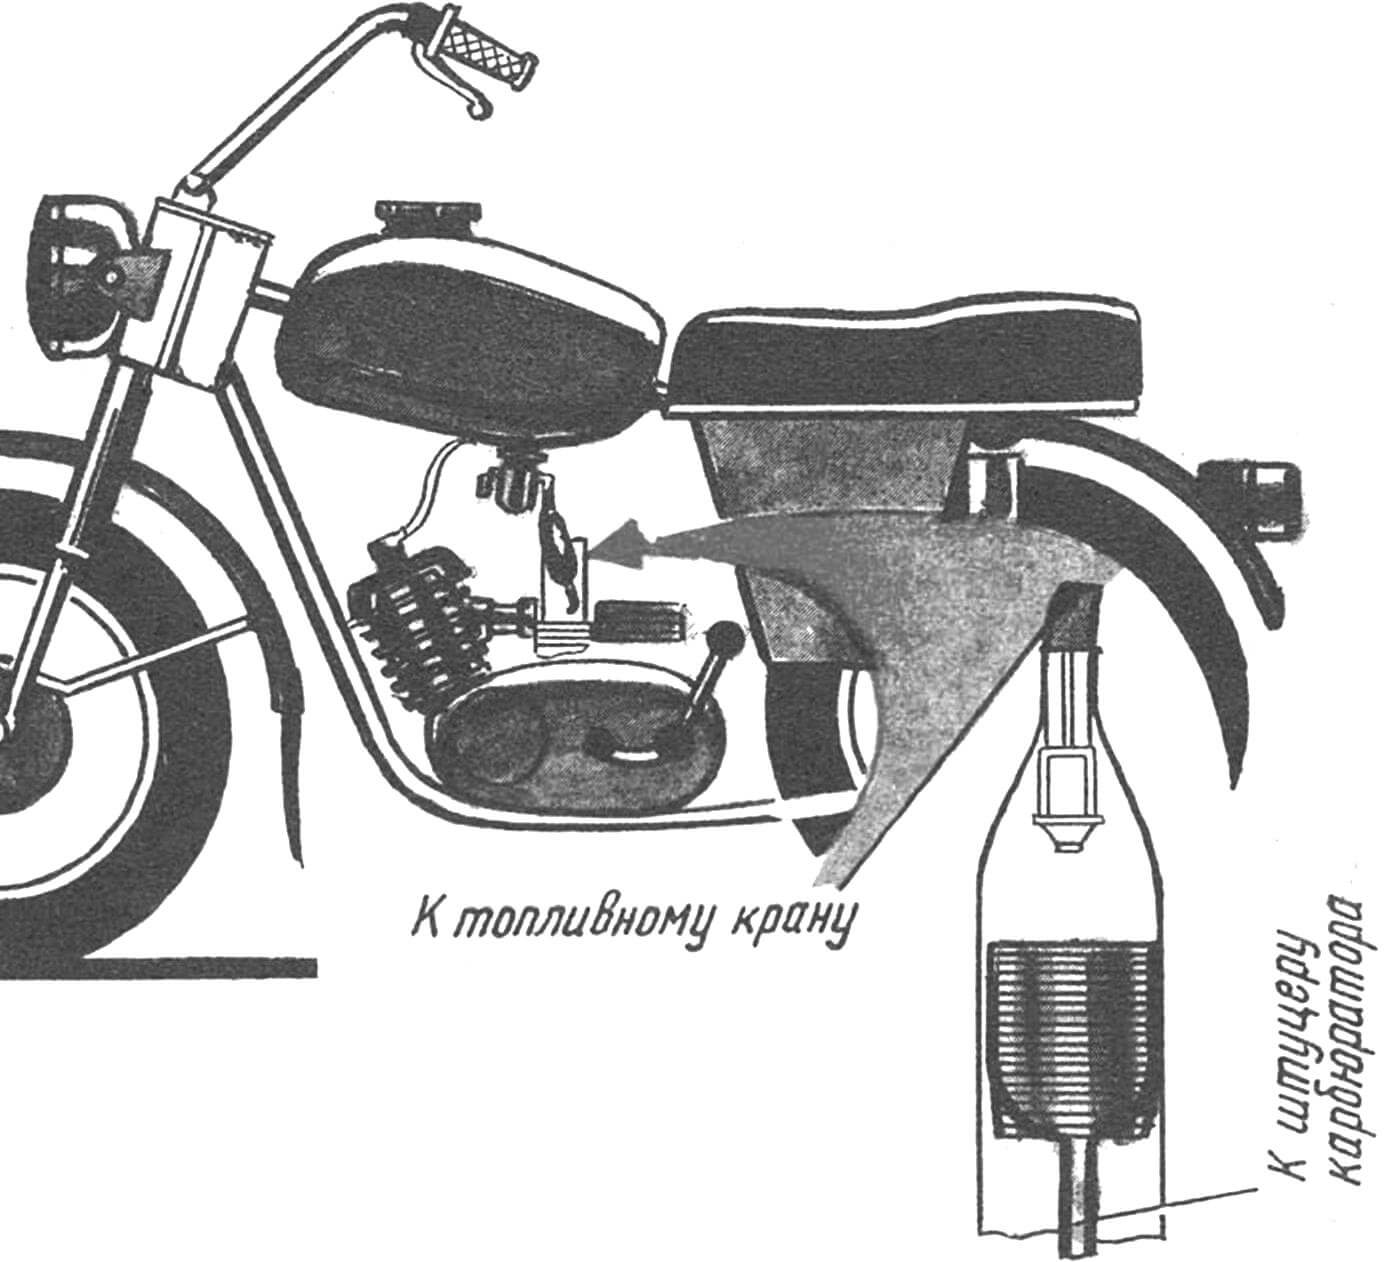 Фильтрующий элемент и его монтаж на топливную систему мотоцикла.